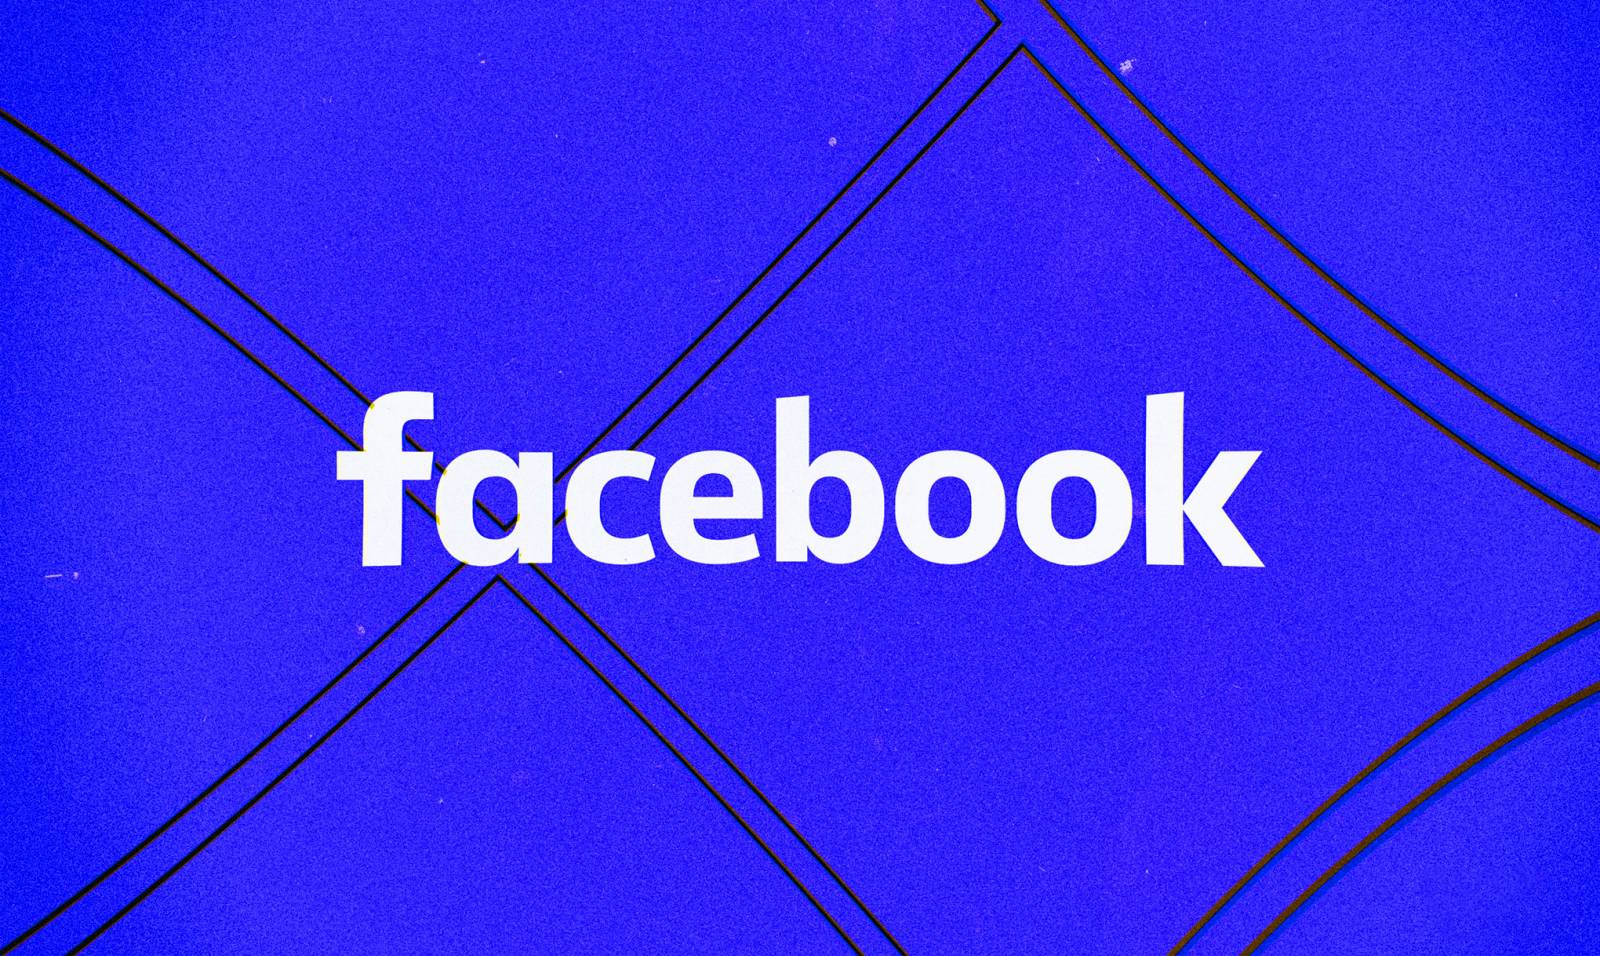 Facebook-uppdatering har släppts för applikationen, vilka ändringar erbjuds